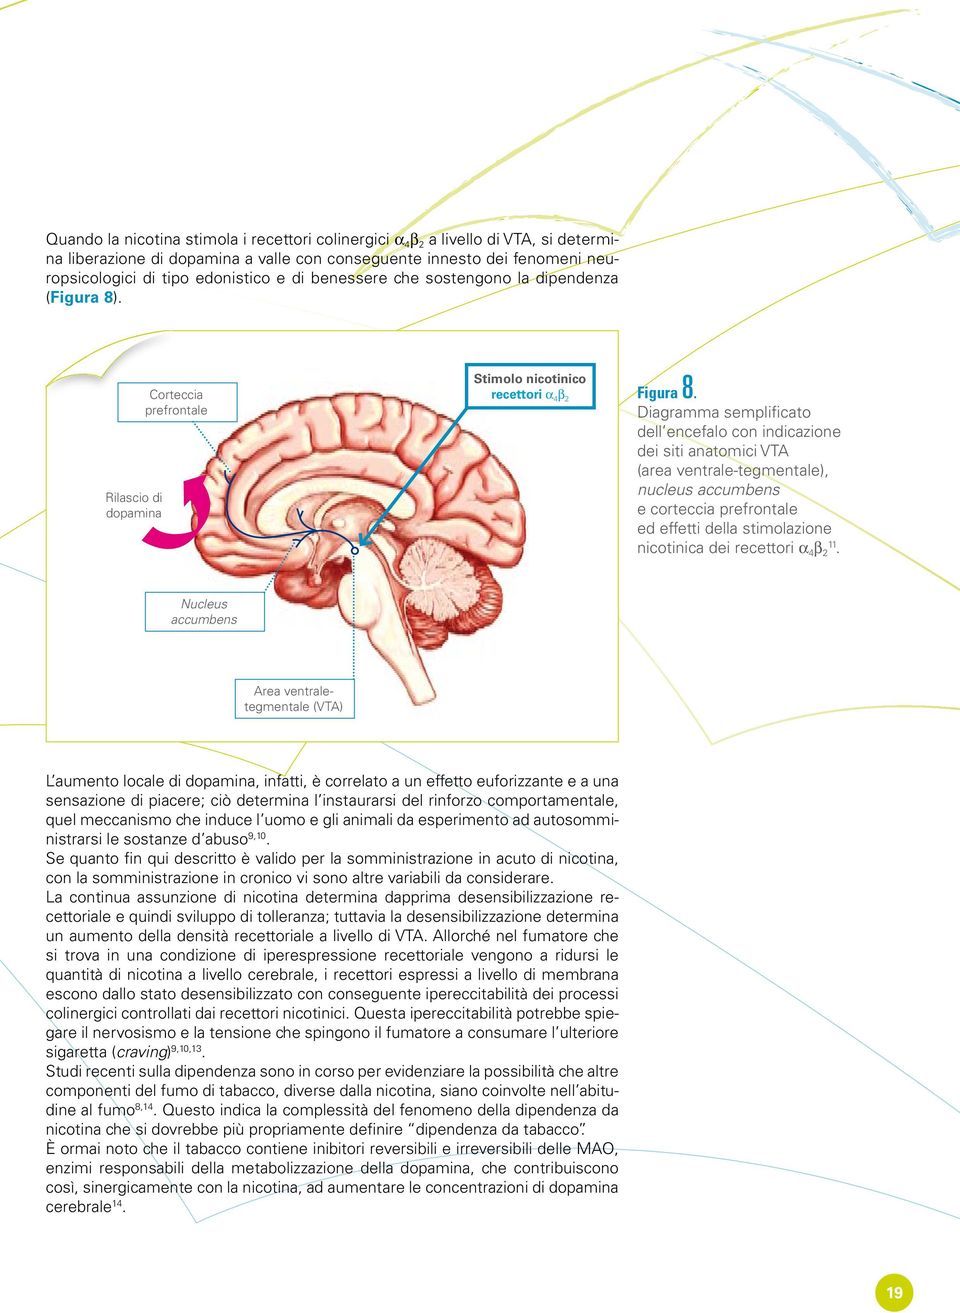 Diagramma semplificato dell encefalo con indicazione dei siti anatomici VTA (area ventrale-tegmentale), nucleus accumbens e corteccia prefrontale ed effetti della stimolazione nicotinica dei